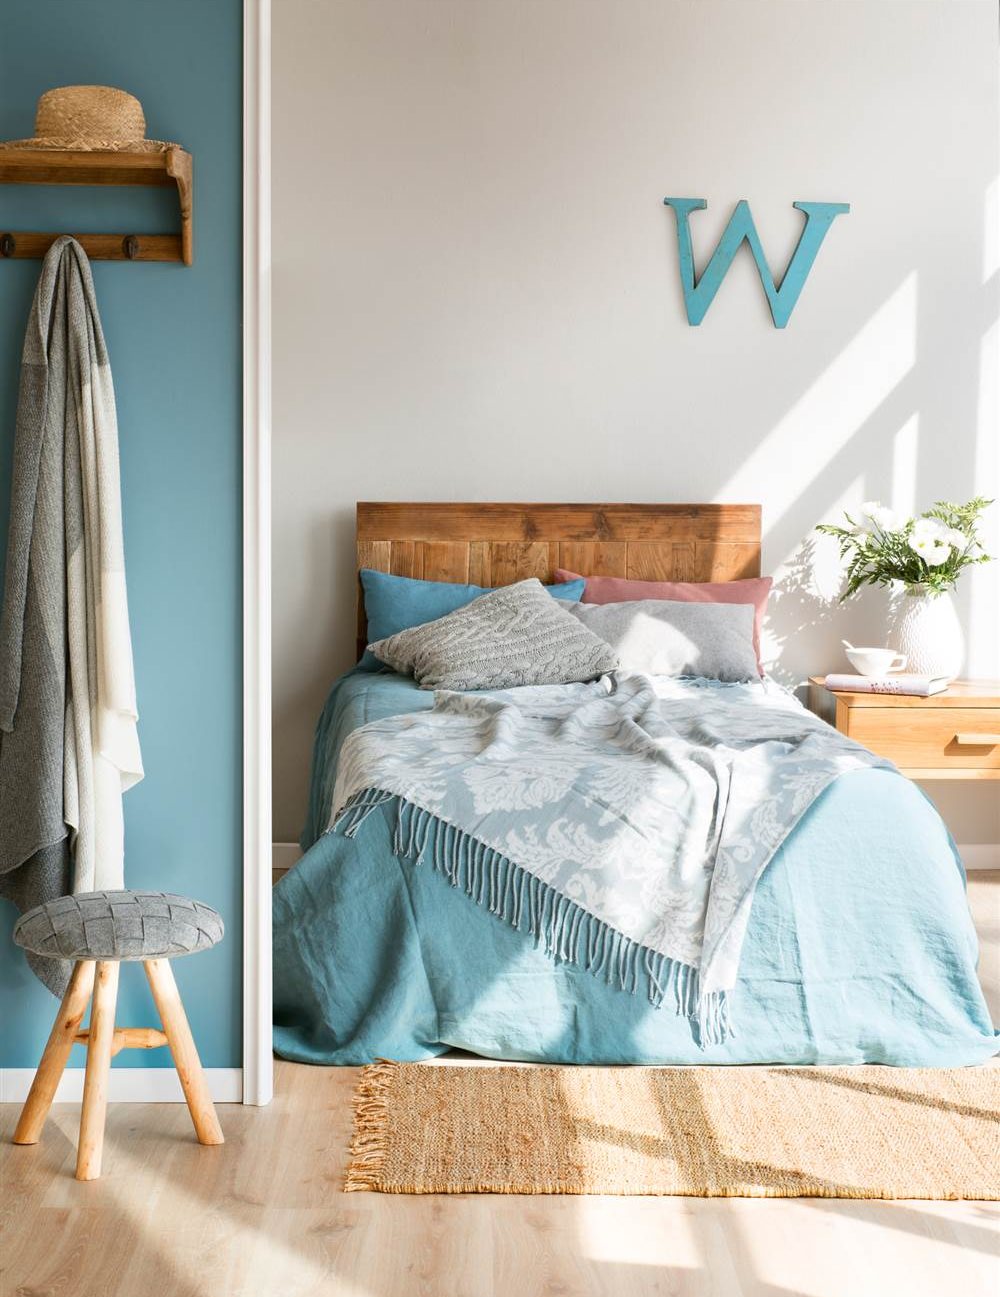 Dormitorio con pared gris piedra y azul, con cabecero y mesita de noche de madera, letra W decorativa, ropa de cama con estampado damasco, taburete y colgador